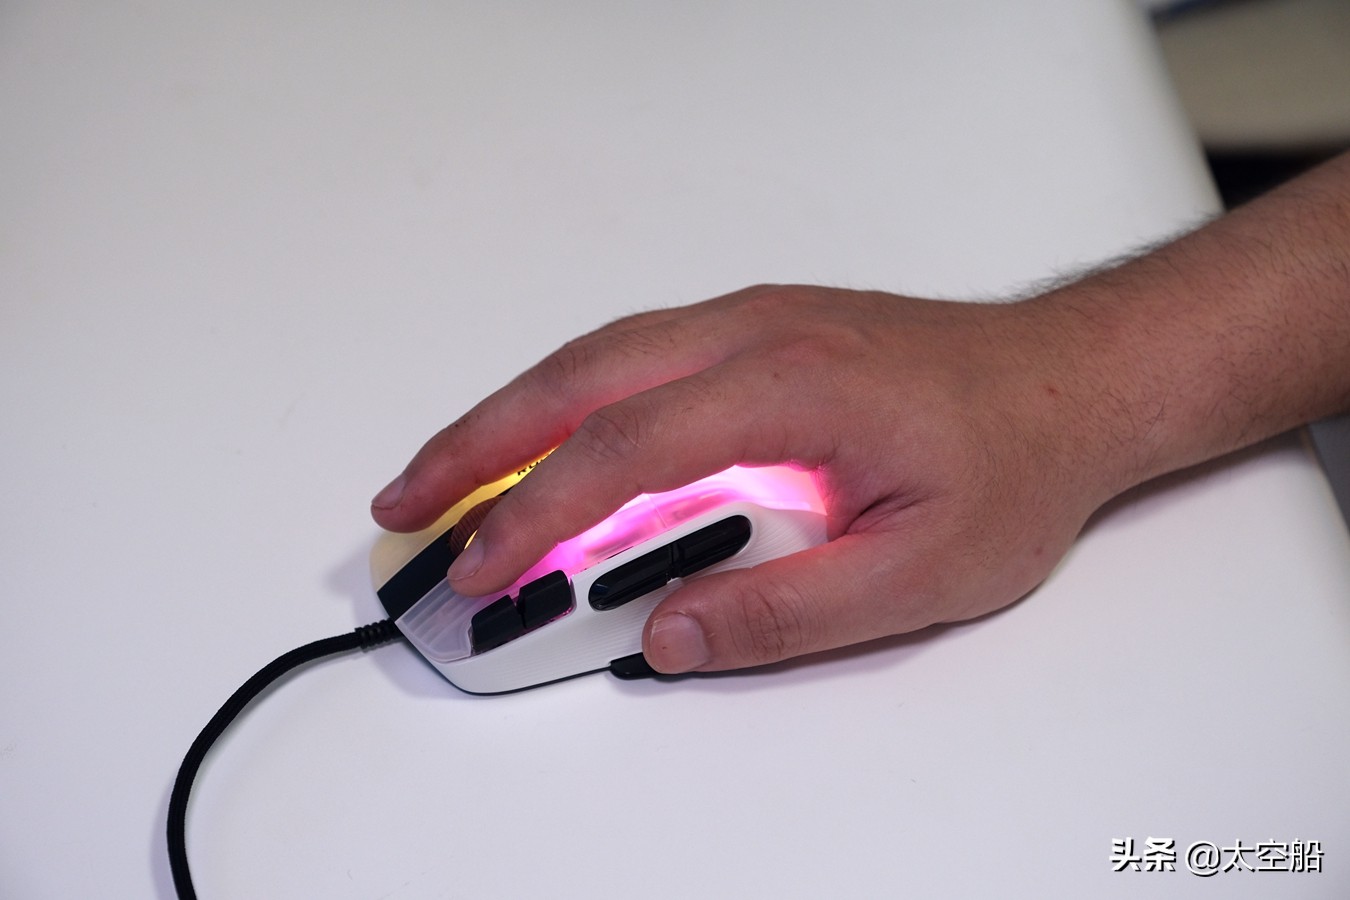 15个物理按钮，3D RGB灯效加持，冰豹Kone XP游戏鼠标评测